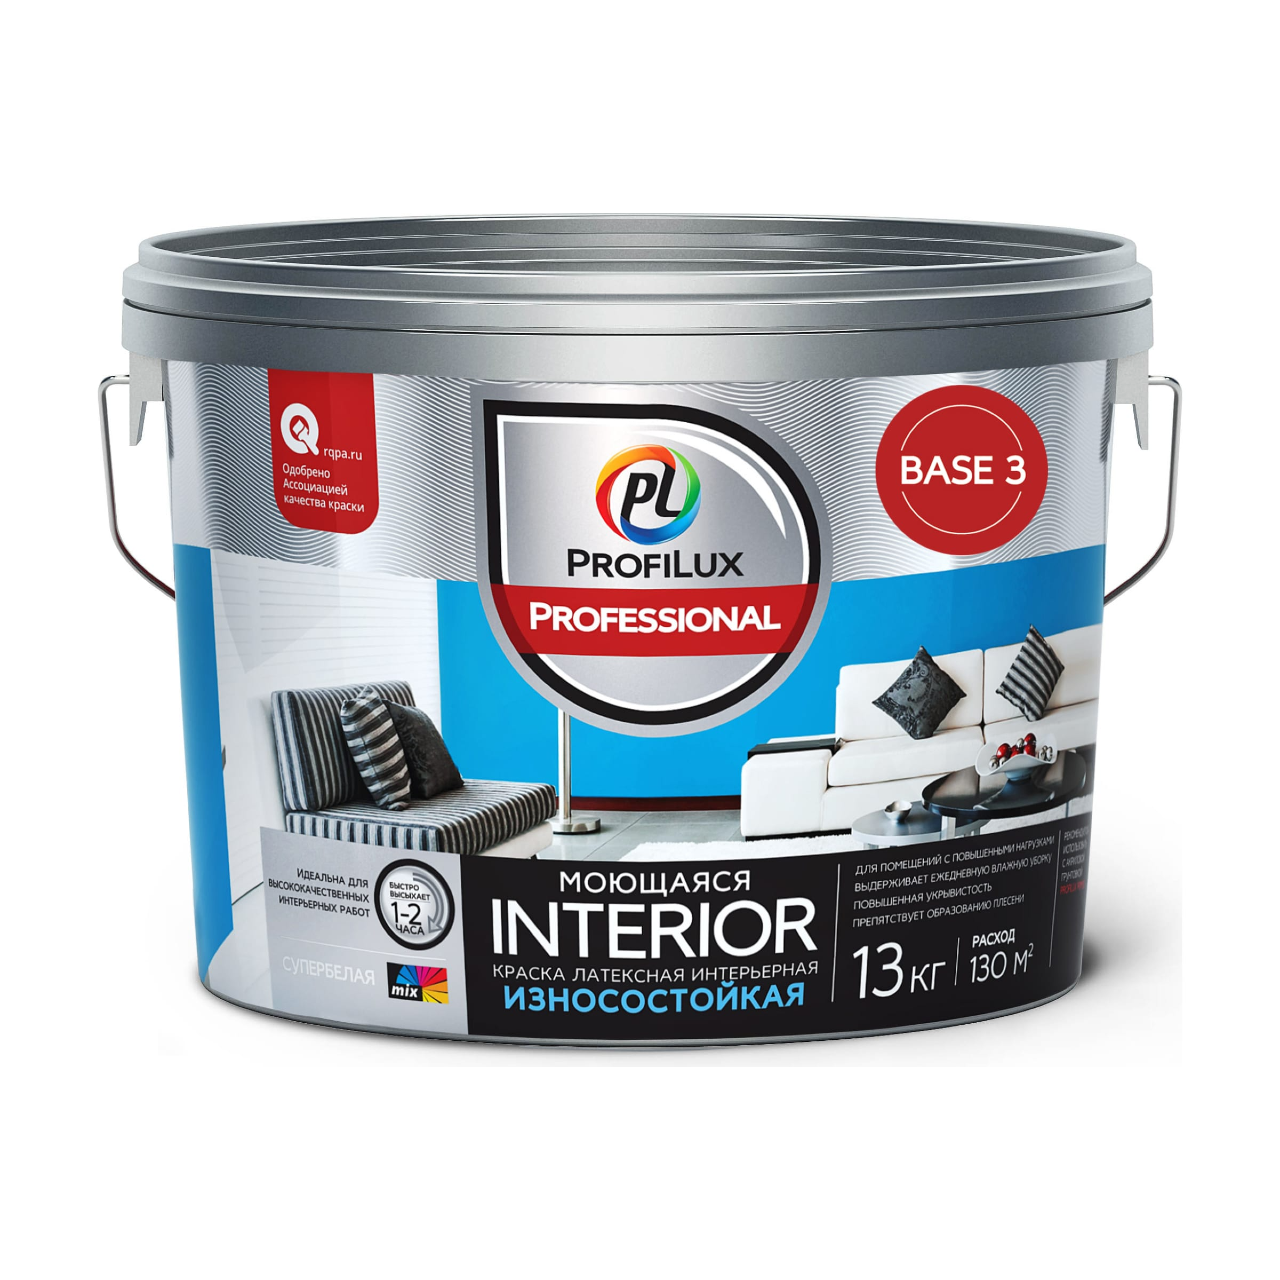 90190623 Краска для стен и потолков для влажных помещений латексная Profilux Professional Interior моющаяся матовая база 3 13 кг STLM-0126772 DUFA